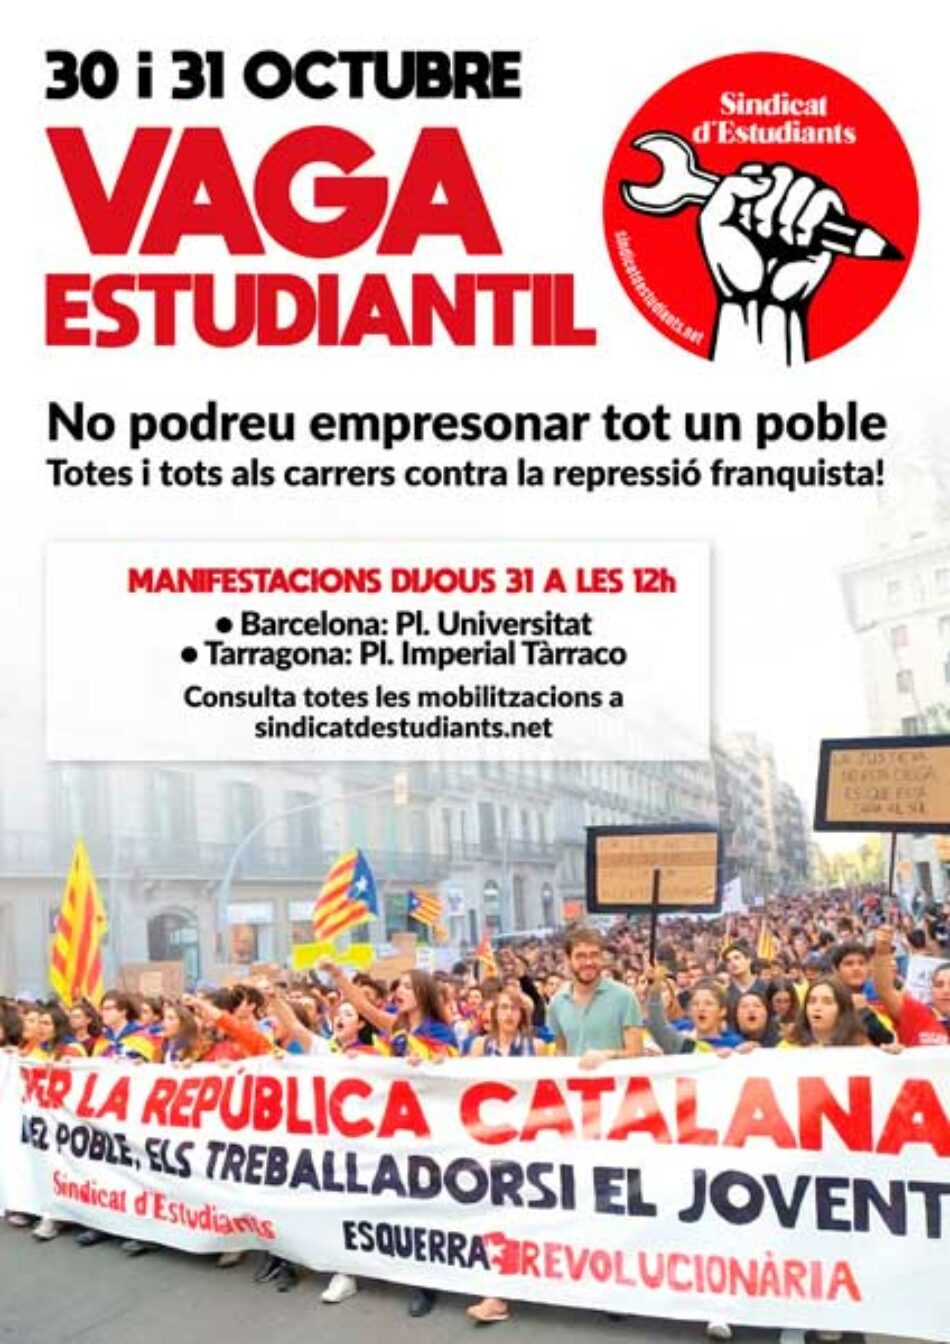 «¡El 30-31 de Octubre vaciamos las aulas y llenamos las calles contra la represión y por la república!»